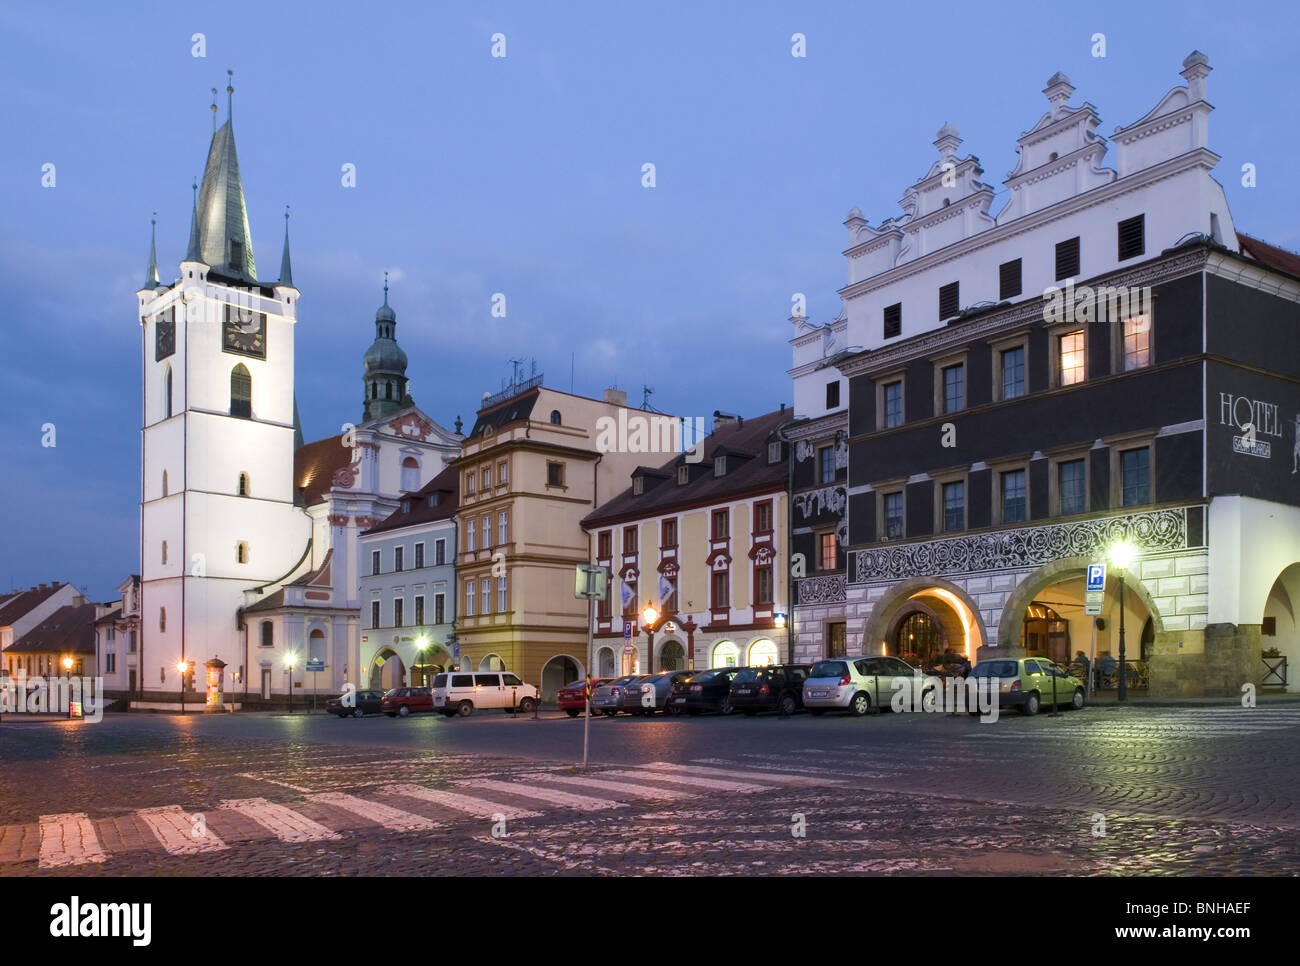 historische alte Stadt Litomerice Leitmeritz Böhmen Tschechien